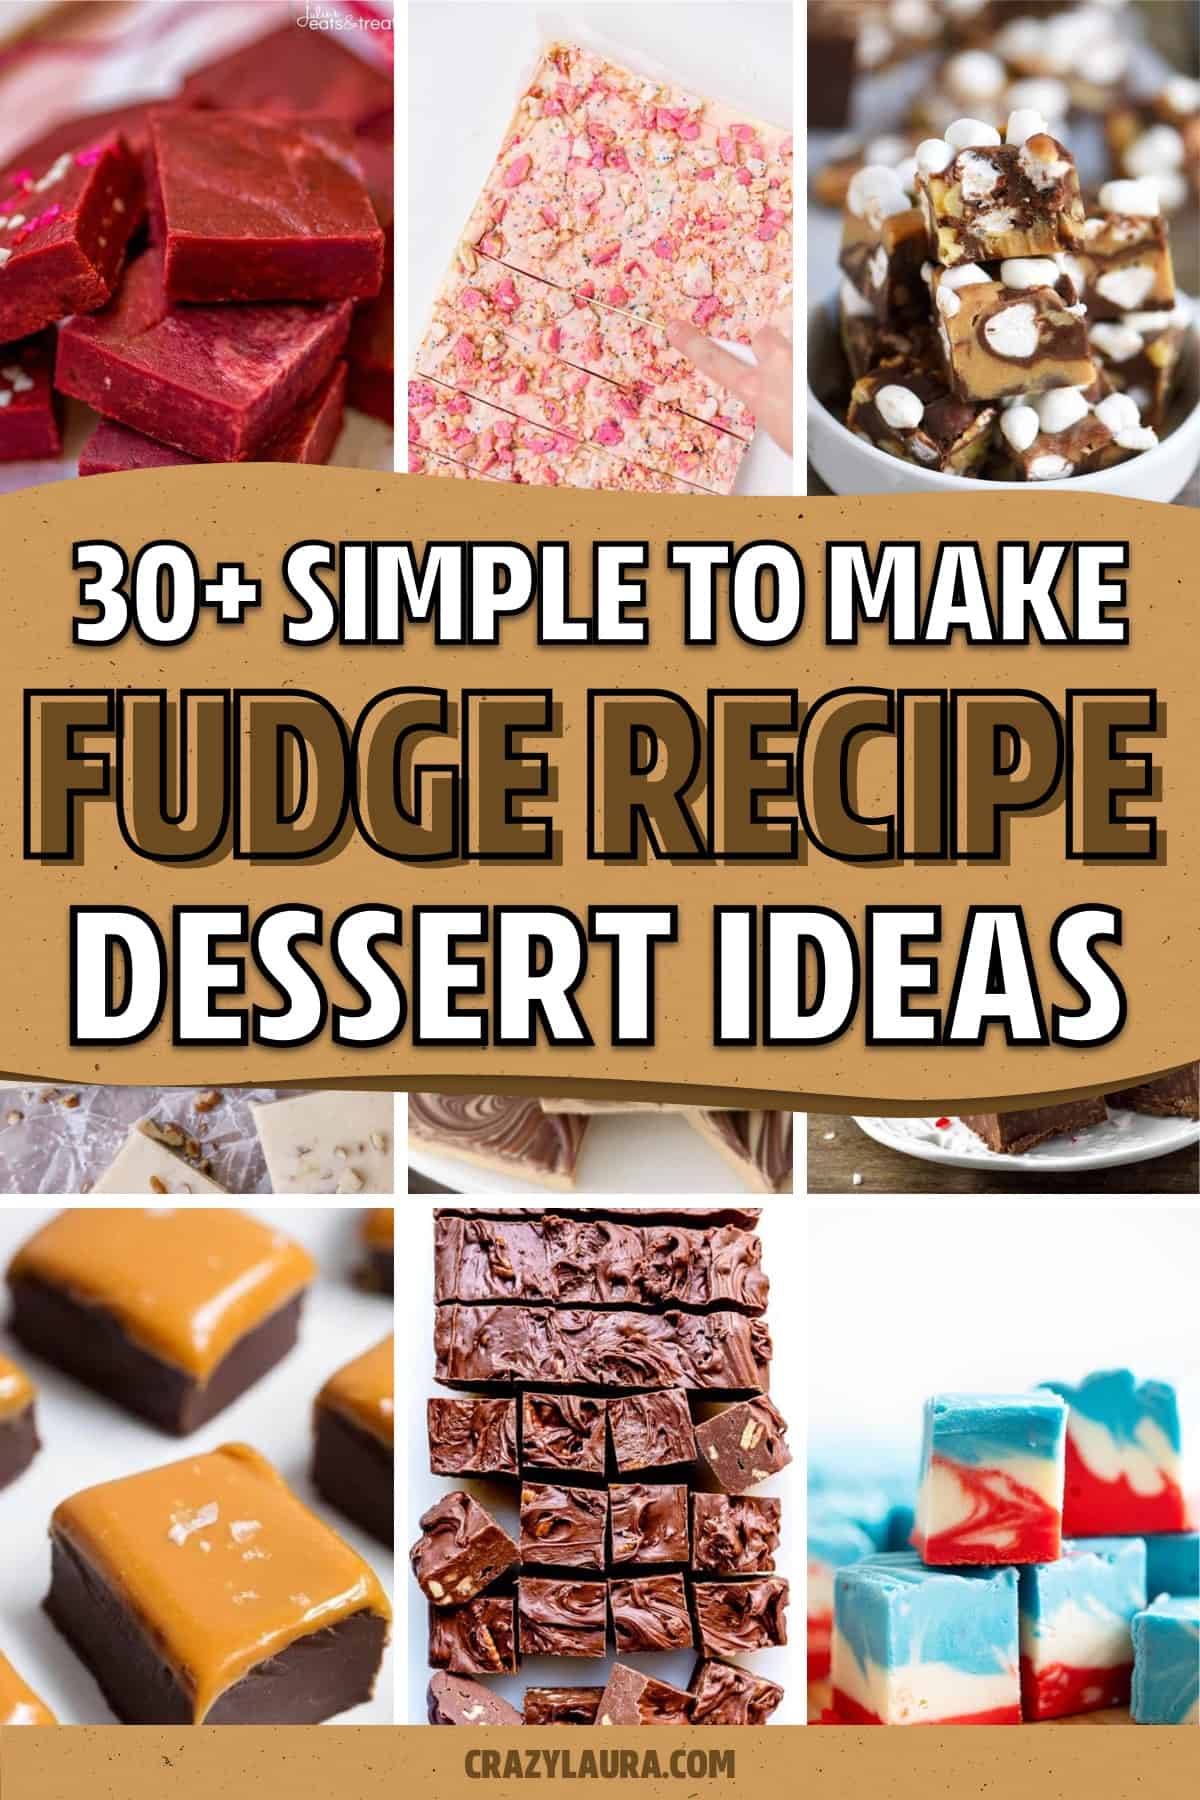 homemade recipe ideas for dessert fudge